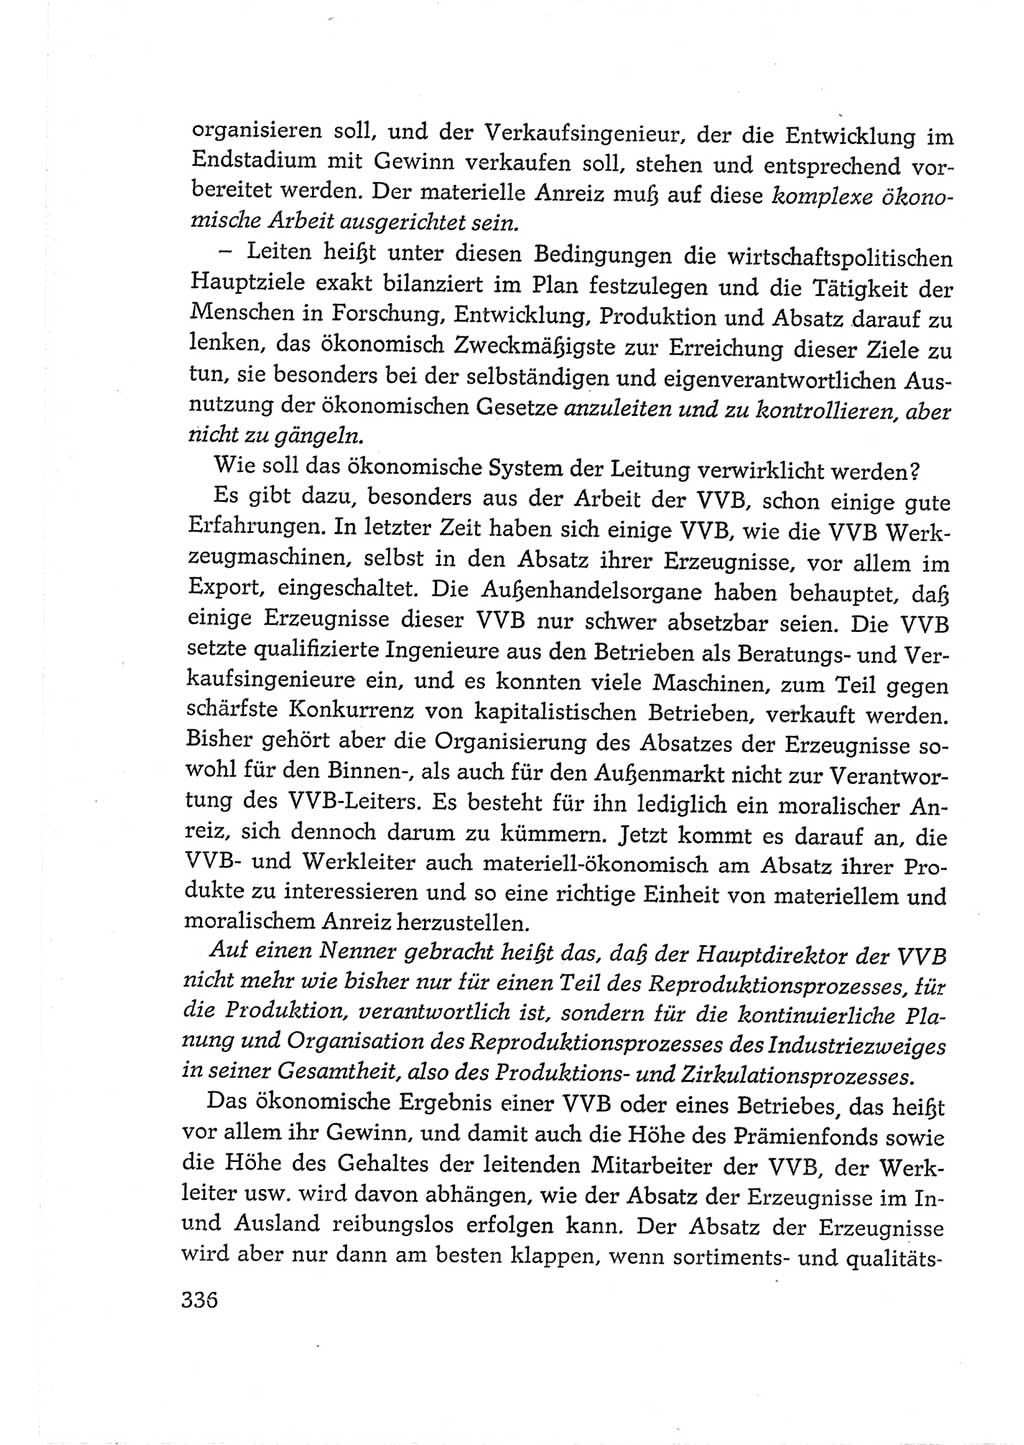 Protokoll der Verhandlungen des Ⅵ. Parteitages der Sozialistischen Einheitspartei Deutschlands (SED) [Deutsche Demokratische Republik (DDR)] 1963, Band Ⅲ, Seite 336 (Prot. Verh. Ⅵ. PT SED DDR 1963, Bd. Ⅲ, S. 336)